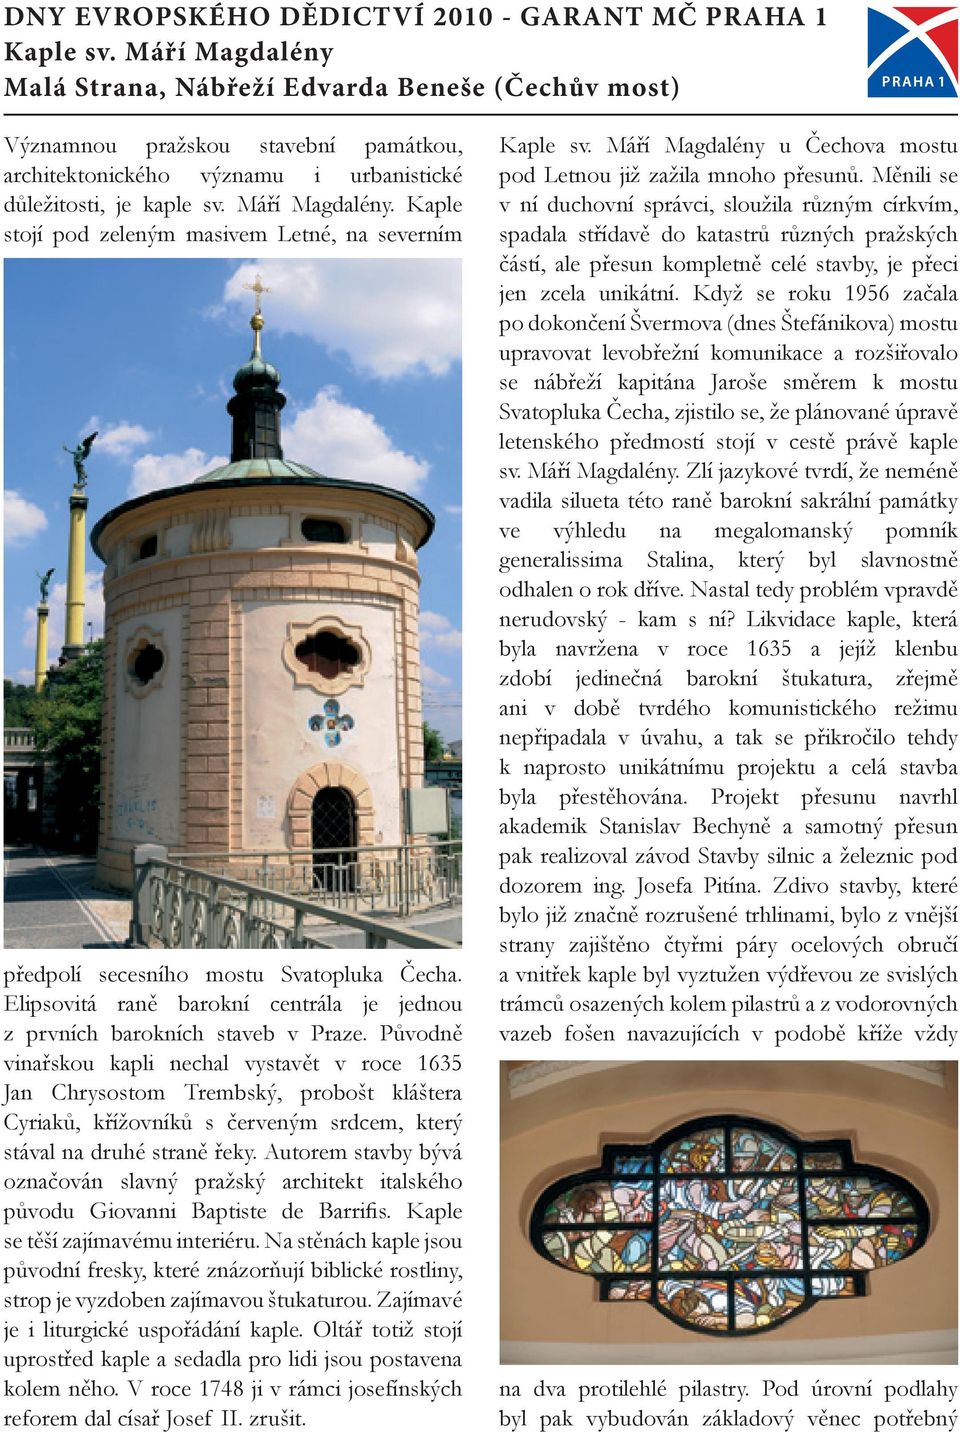 Kaple stojí pod zeleným masivem Letné, na severním předpolí secesního mostu Svatopluka Čecha. Elipsovitá raně barokní centrála je jednou z prvních barokních staveb v Praze.